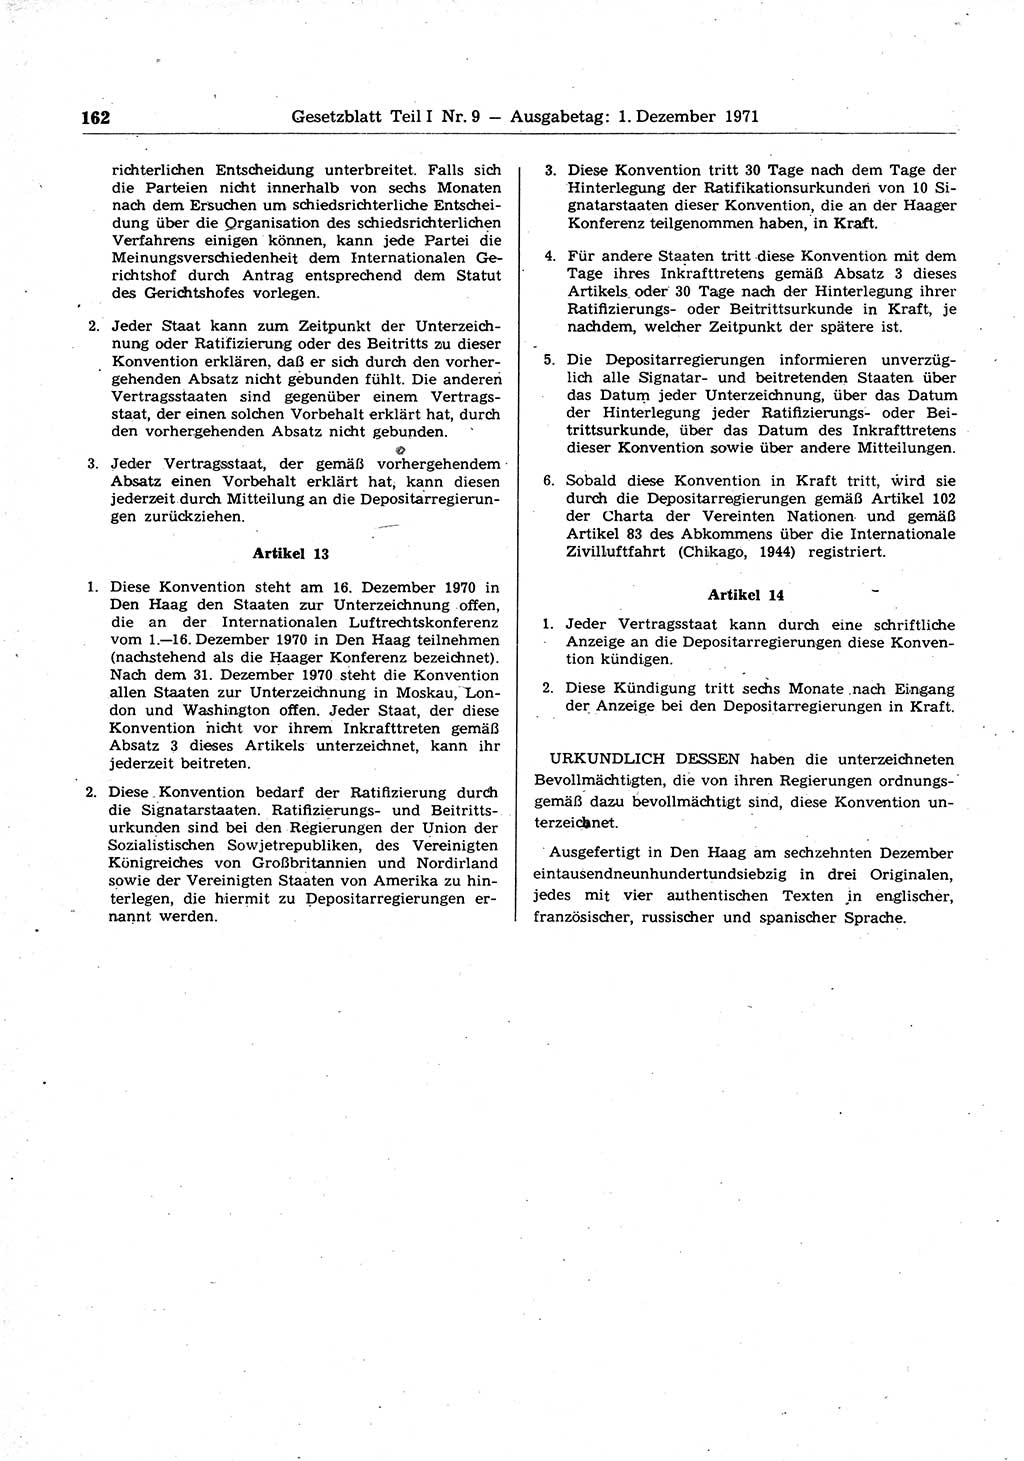 Gesetzblatt (GBl.) der Deutschen Demokratischen Republik (DDR) Teil Ⅰ 1971, Seite 162 (GBl. DDR Ⅰ 1971, S. 162)